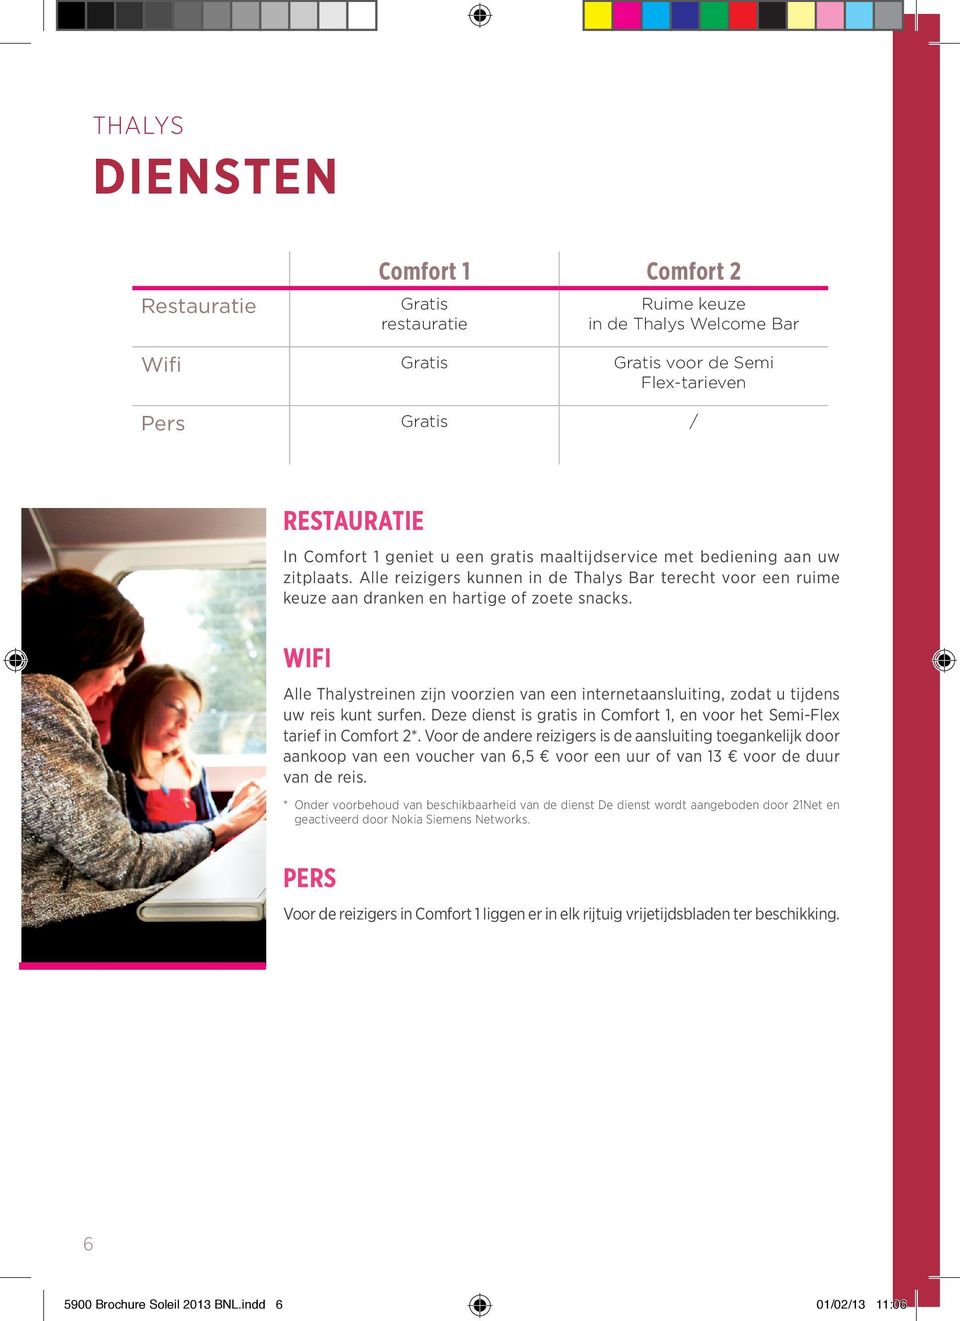 Wifi Alle Thalystreinen zijn voorzien van een internetaansluiting, zodat u tijdens uw reis kunt surfen. Deze dienst is gratis in Comfort 1, en voor het Semi-Flex tarief in Comfort 2*.